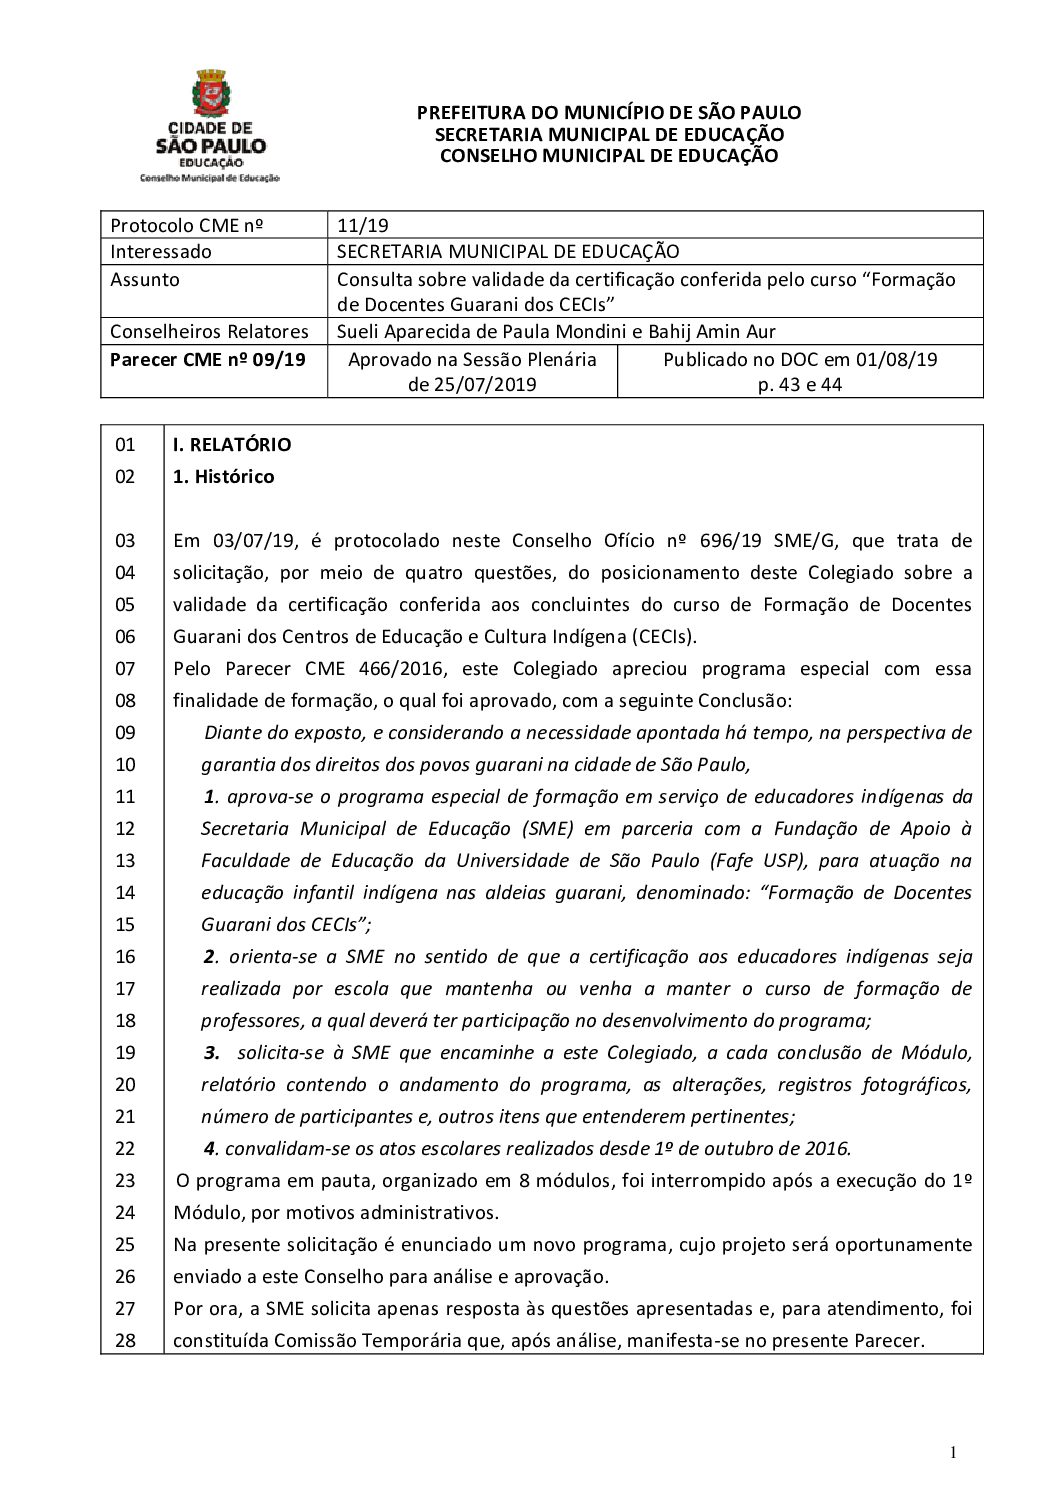 Parecer CME nº 09/2019 - Consulta sobre validade da certificação conferida pelo curso “Formação de Docentes Guarani dos CECIs”